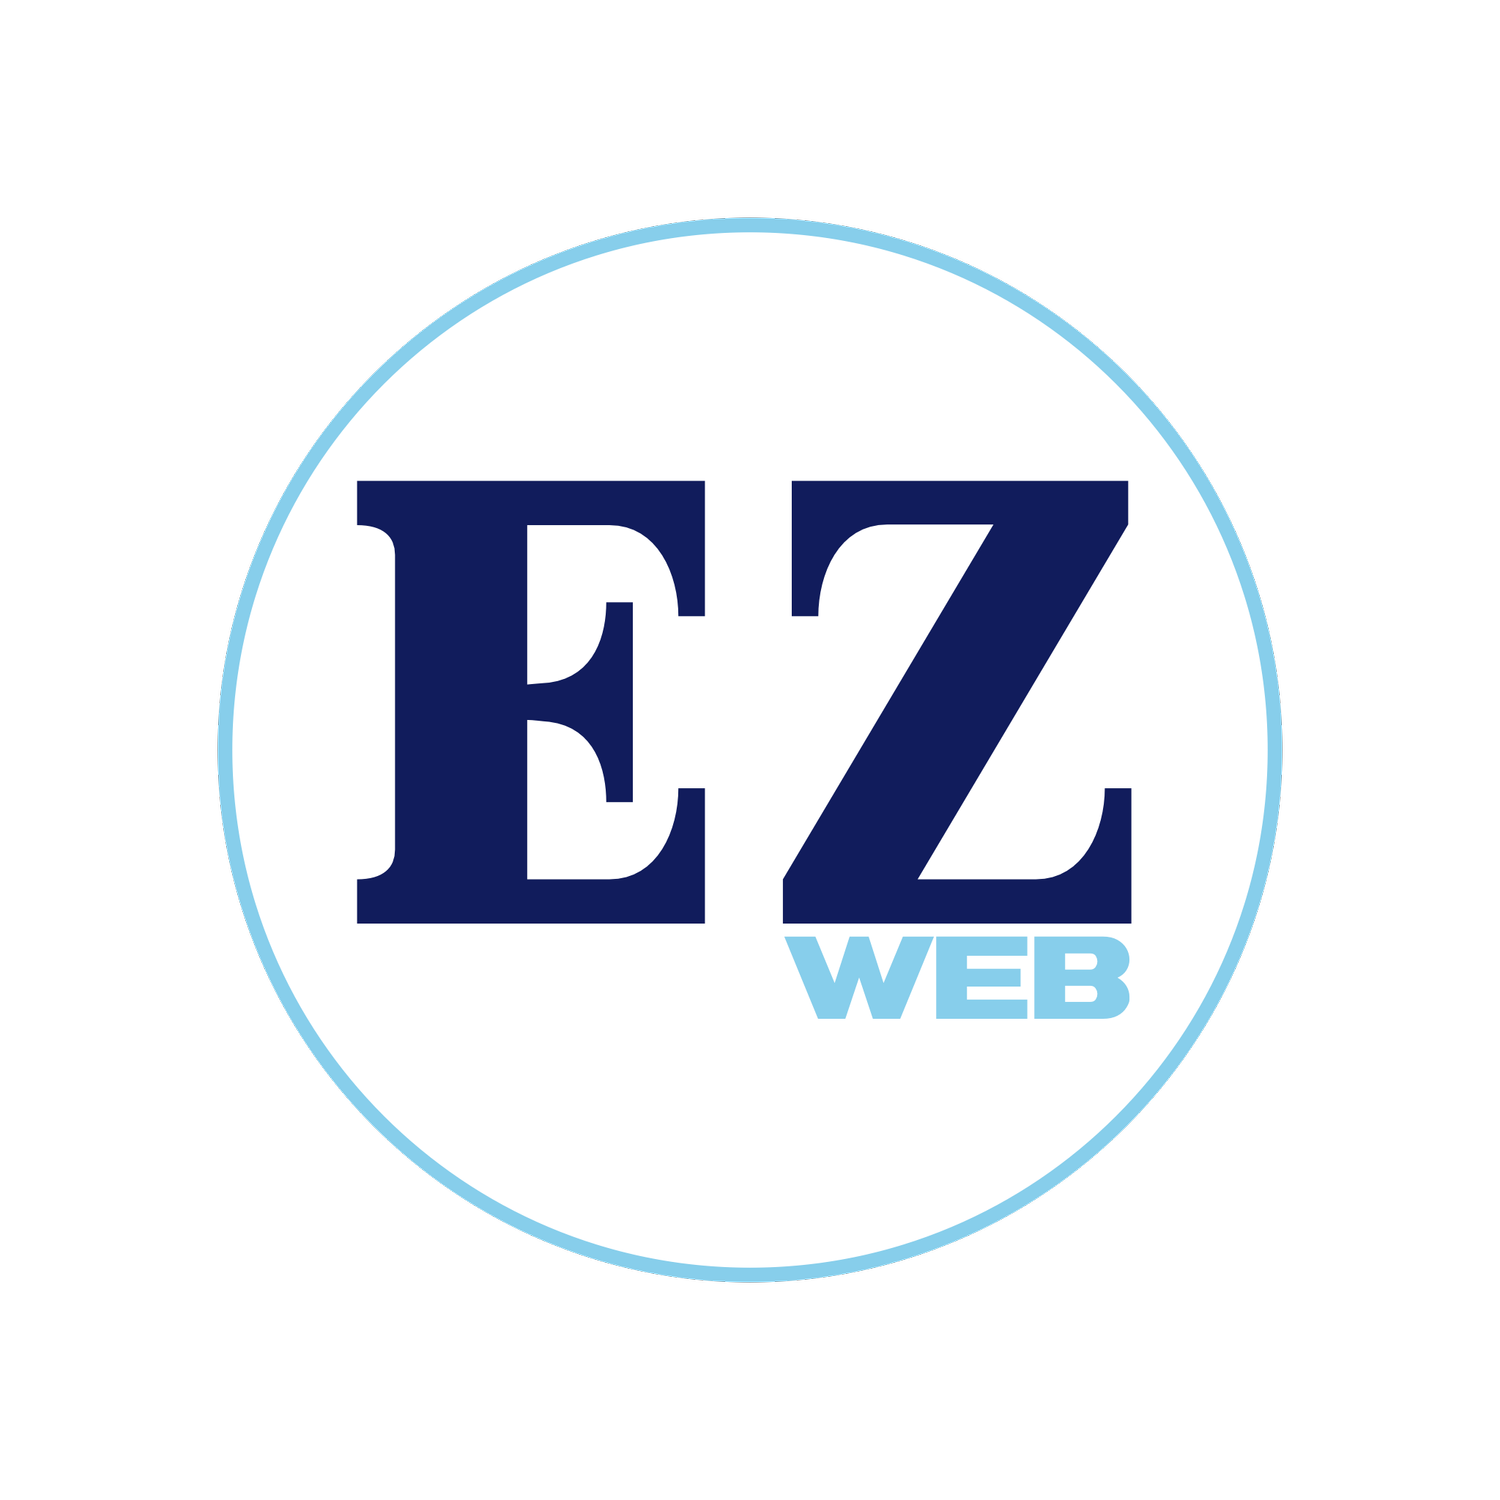 EZ WEB